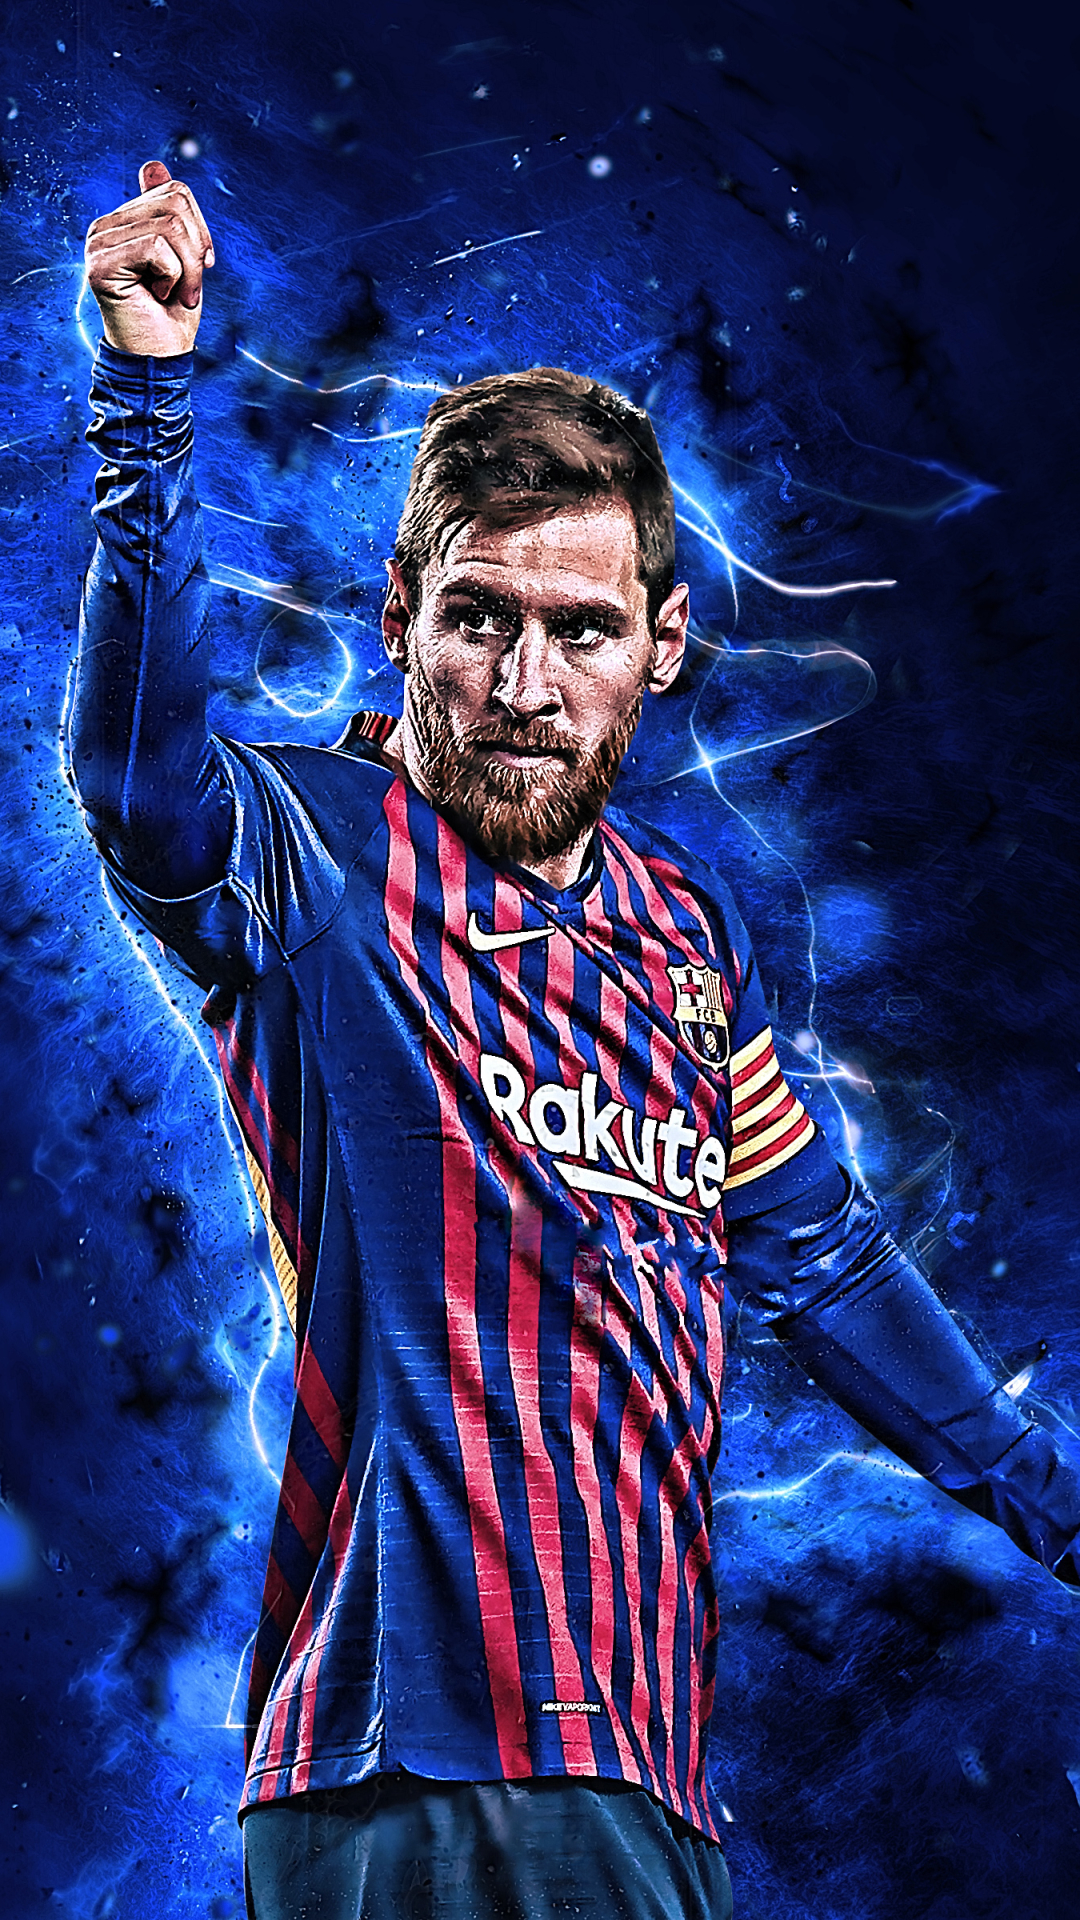 Nếu bạn đang tìm kiếm một hình nền cho điện thoại, hãy lựa chọn hình ảnh Lionel Messi để mang đến một cái nhìn mới mẻ cho màn hình của bạn. Với hình nền siêu sao bóng đá này, chắc chắn bạn sẽ có một trải nghiệm tuyệt vời với điện thoại của mình.